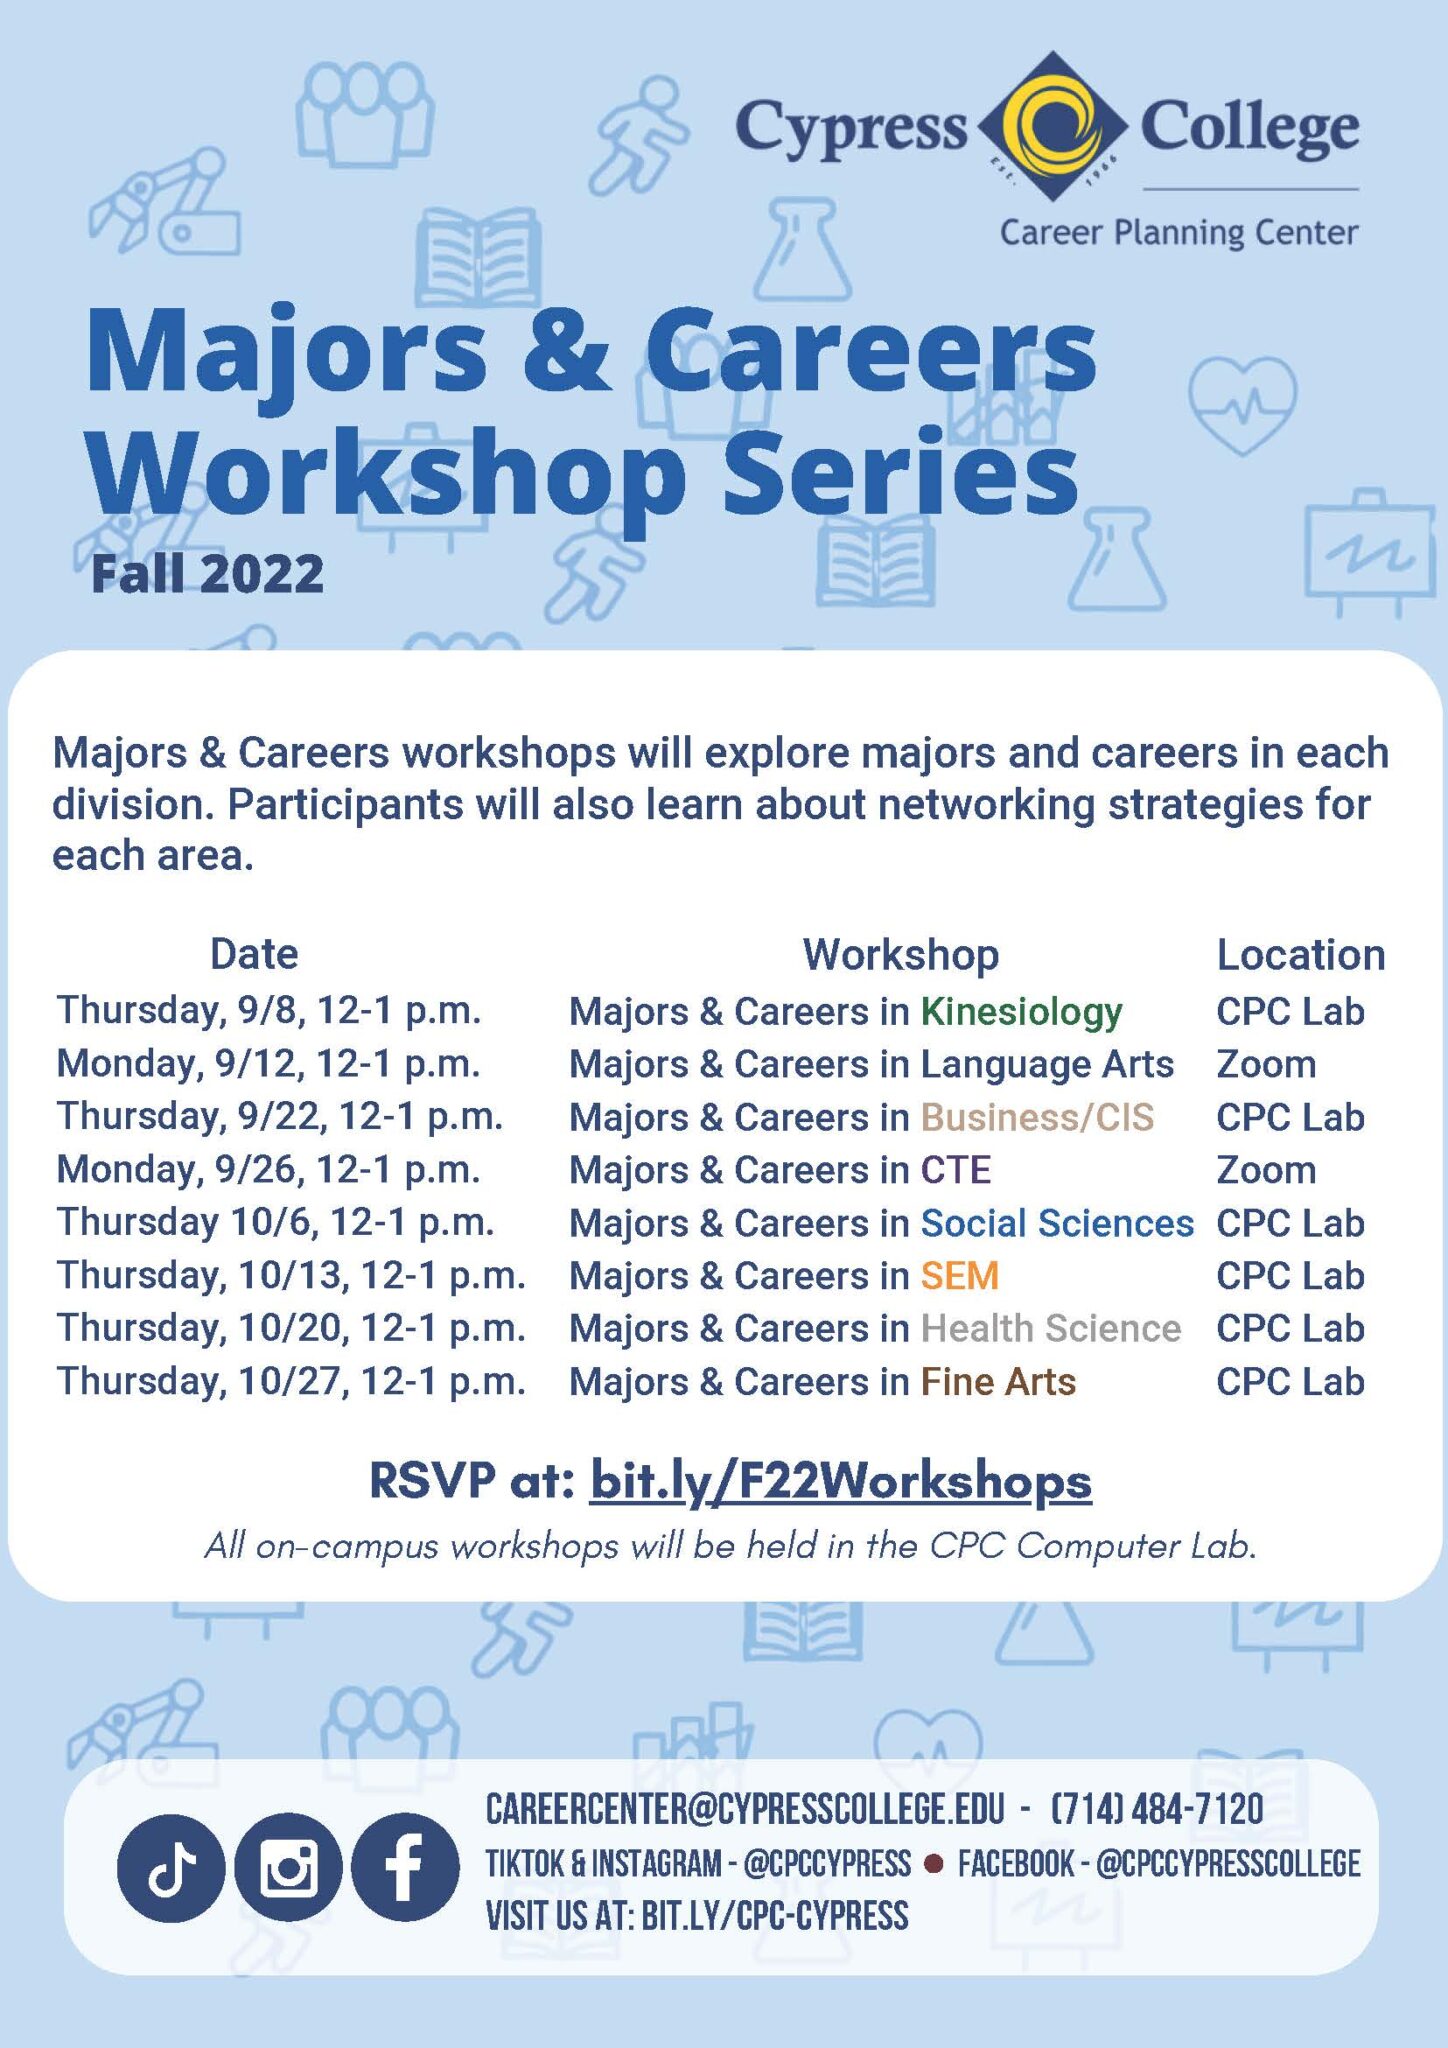 Majors & Careers Workshop Series flyer